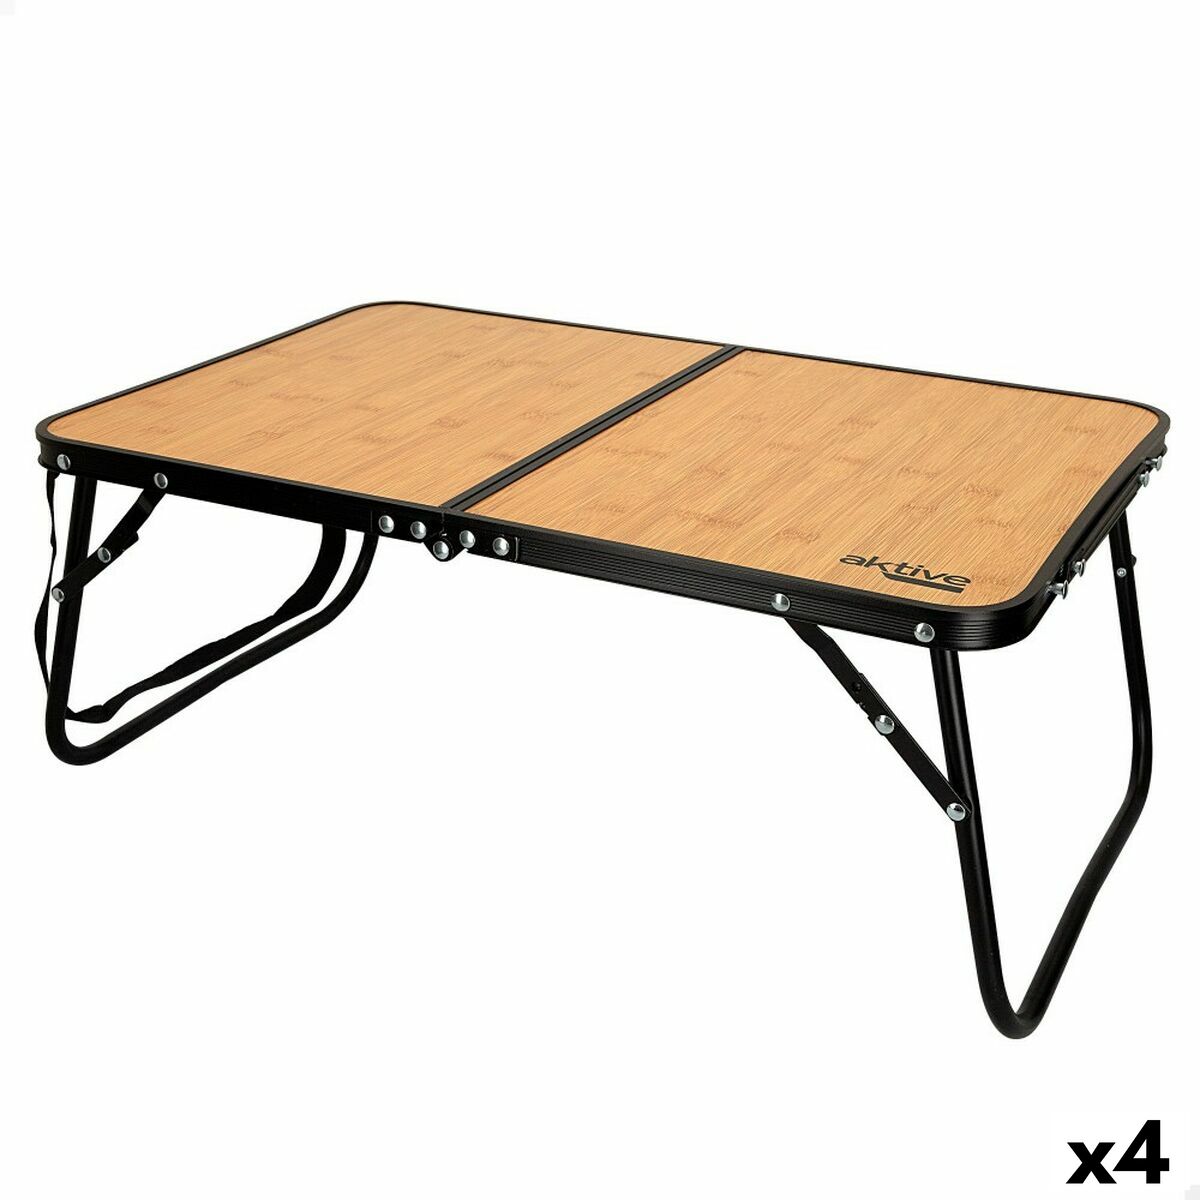 Osta tuote Taitettava Pöytä Aktive Retkeily Bambu 60 x 25 x 40 cm (4 osaa) verkkokaupastamme Korhone: Urheilu & Vapaa-aika 20% alennuksella koodilla VIIKONLOPPU